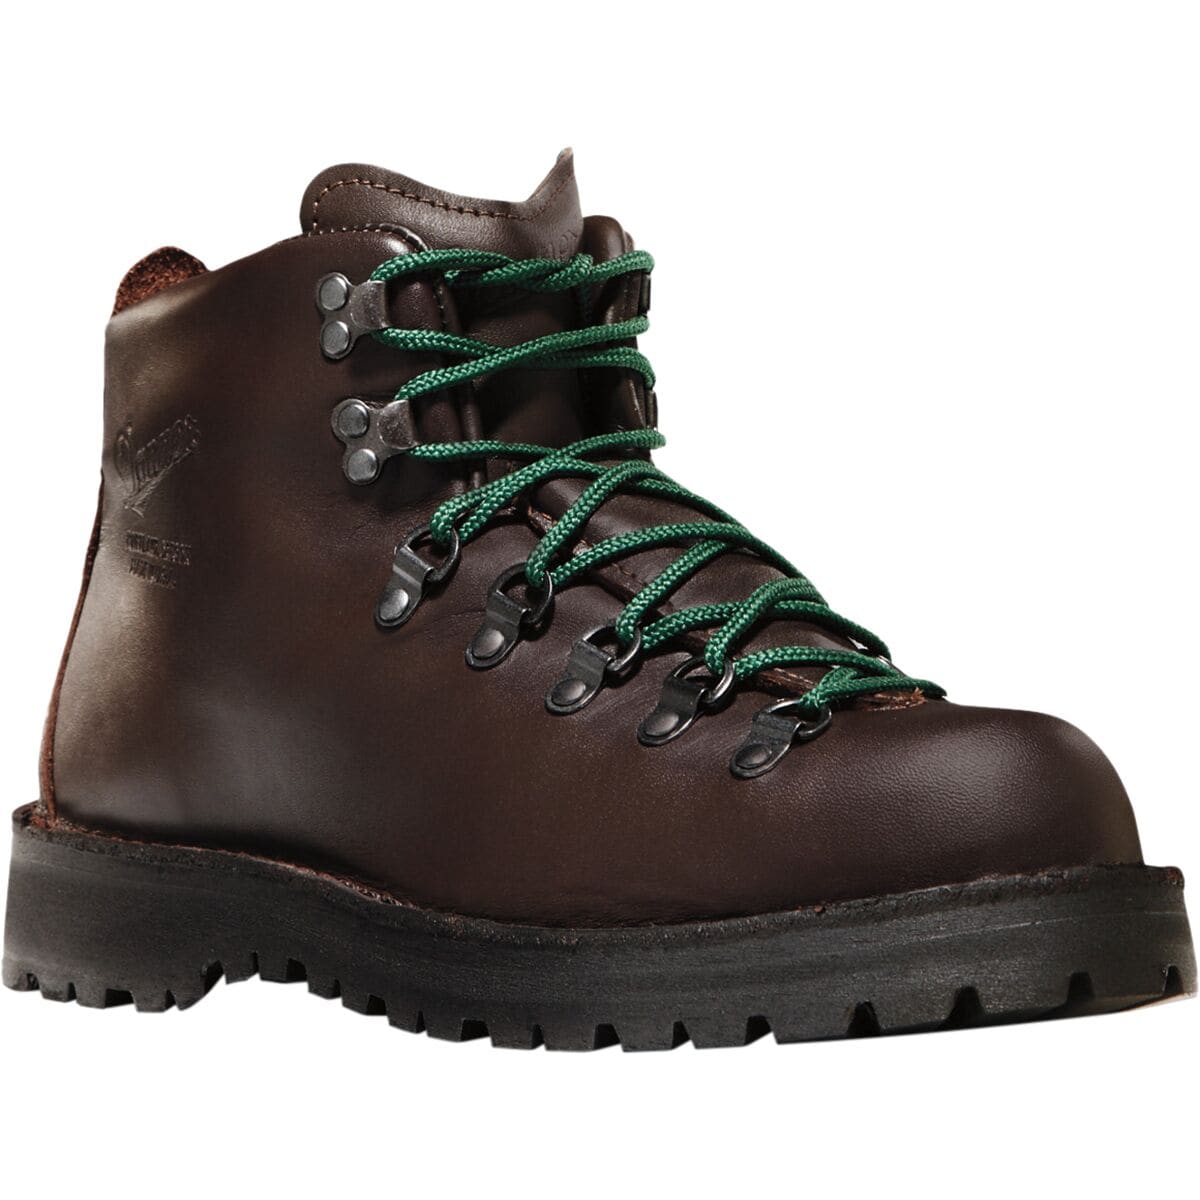 Danner Mountain Light II Wide Boot - Men's - Footwear